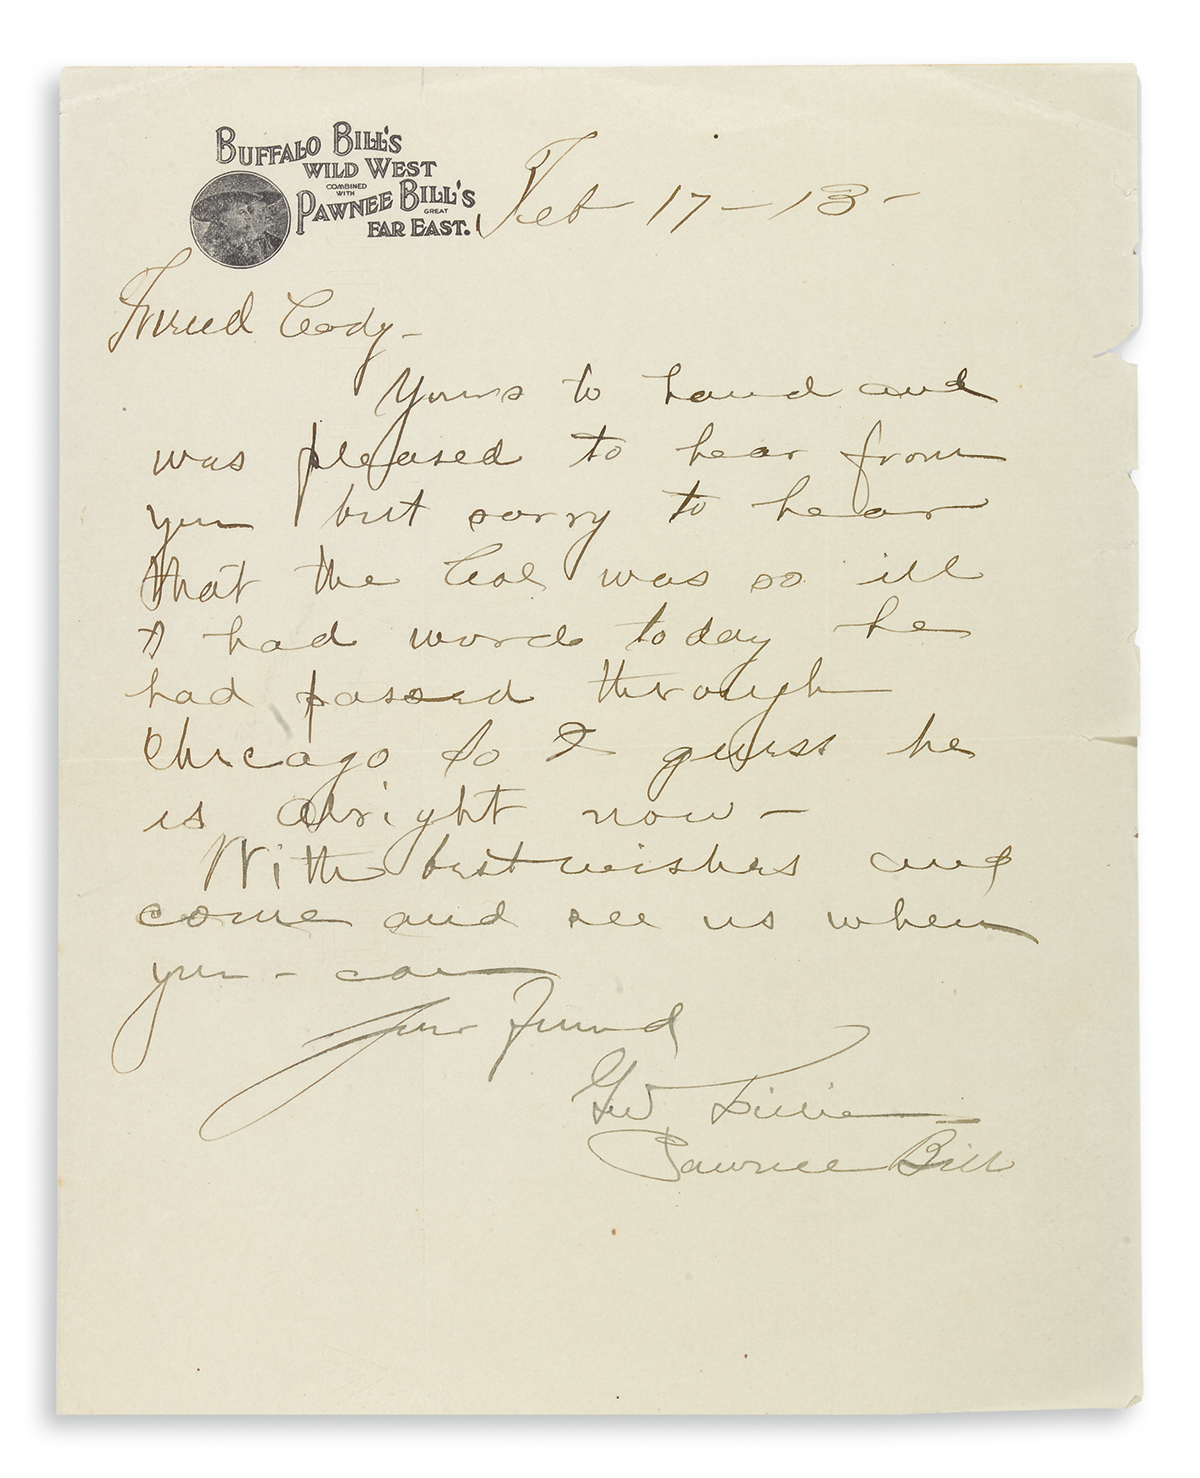 LILLIE, GORDON WILLIAM (PAWNEE BILL). Brief Autograph Letter Signed, G.W. Lillie / Pawnee Bill, to William F. Cody (Friend Cody):